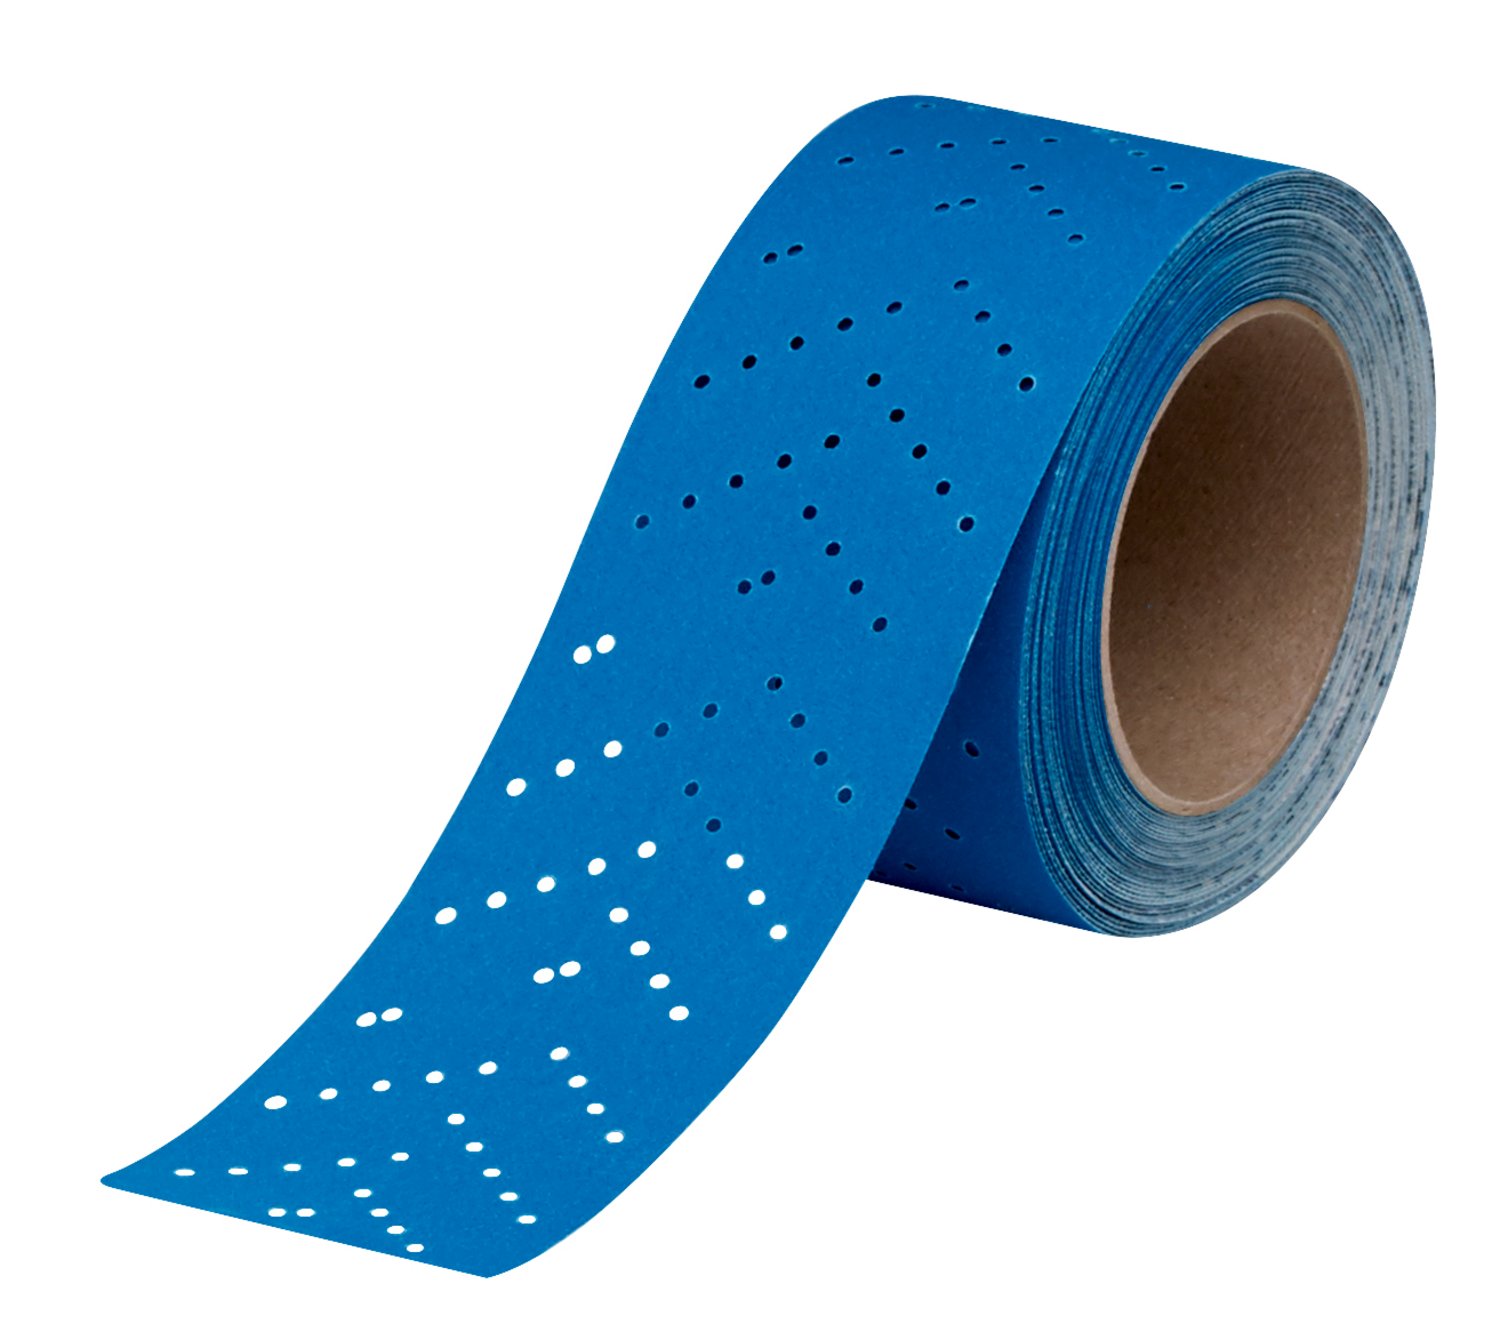 7100091071 - 3M Hookit Blue Abrasive Sheet Roll Multi-hole, 36192, 220, 2.75 in x
13 y, 4 cartons per case